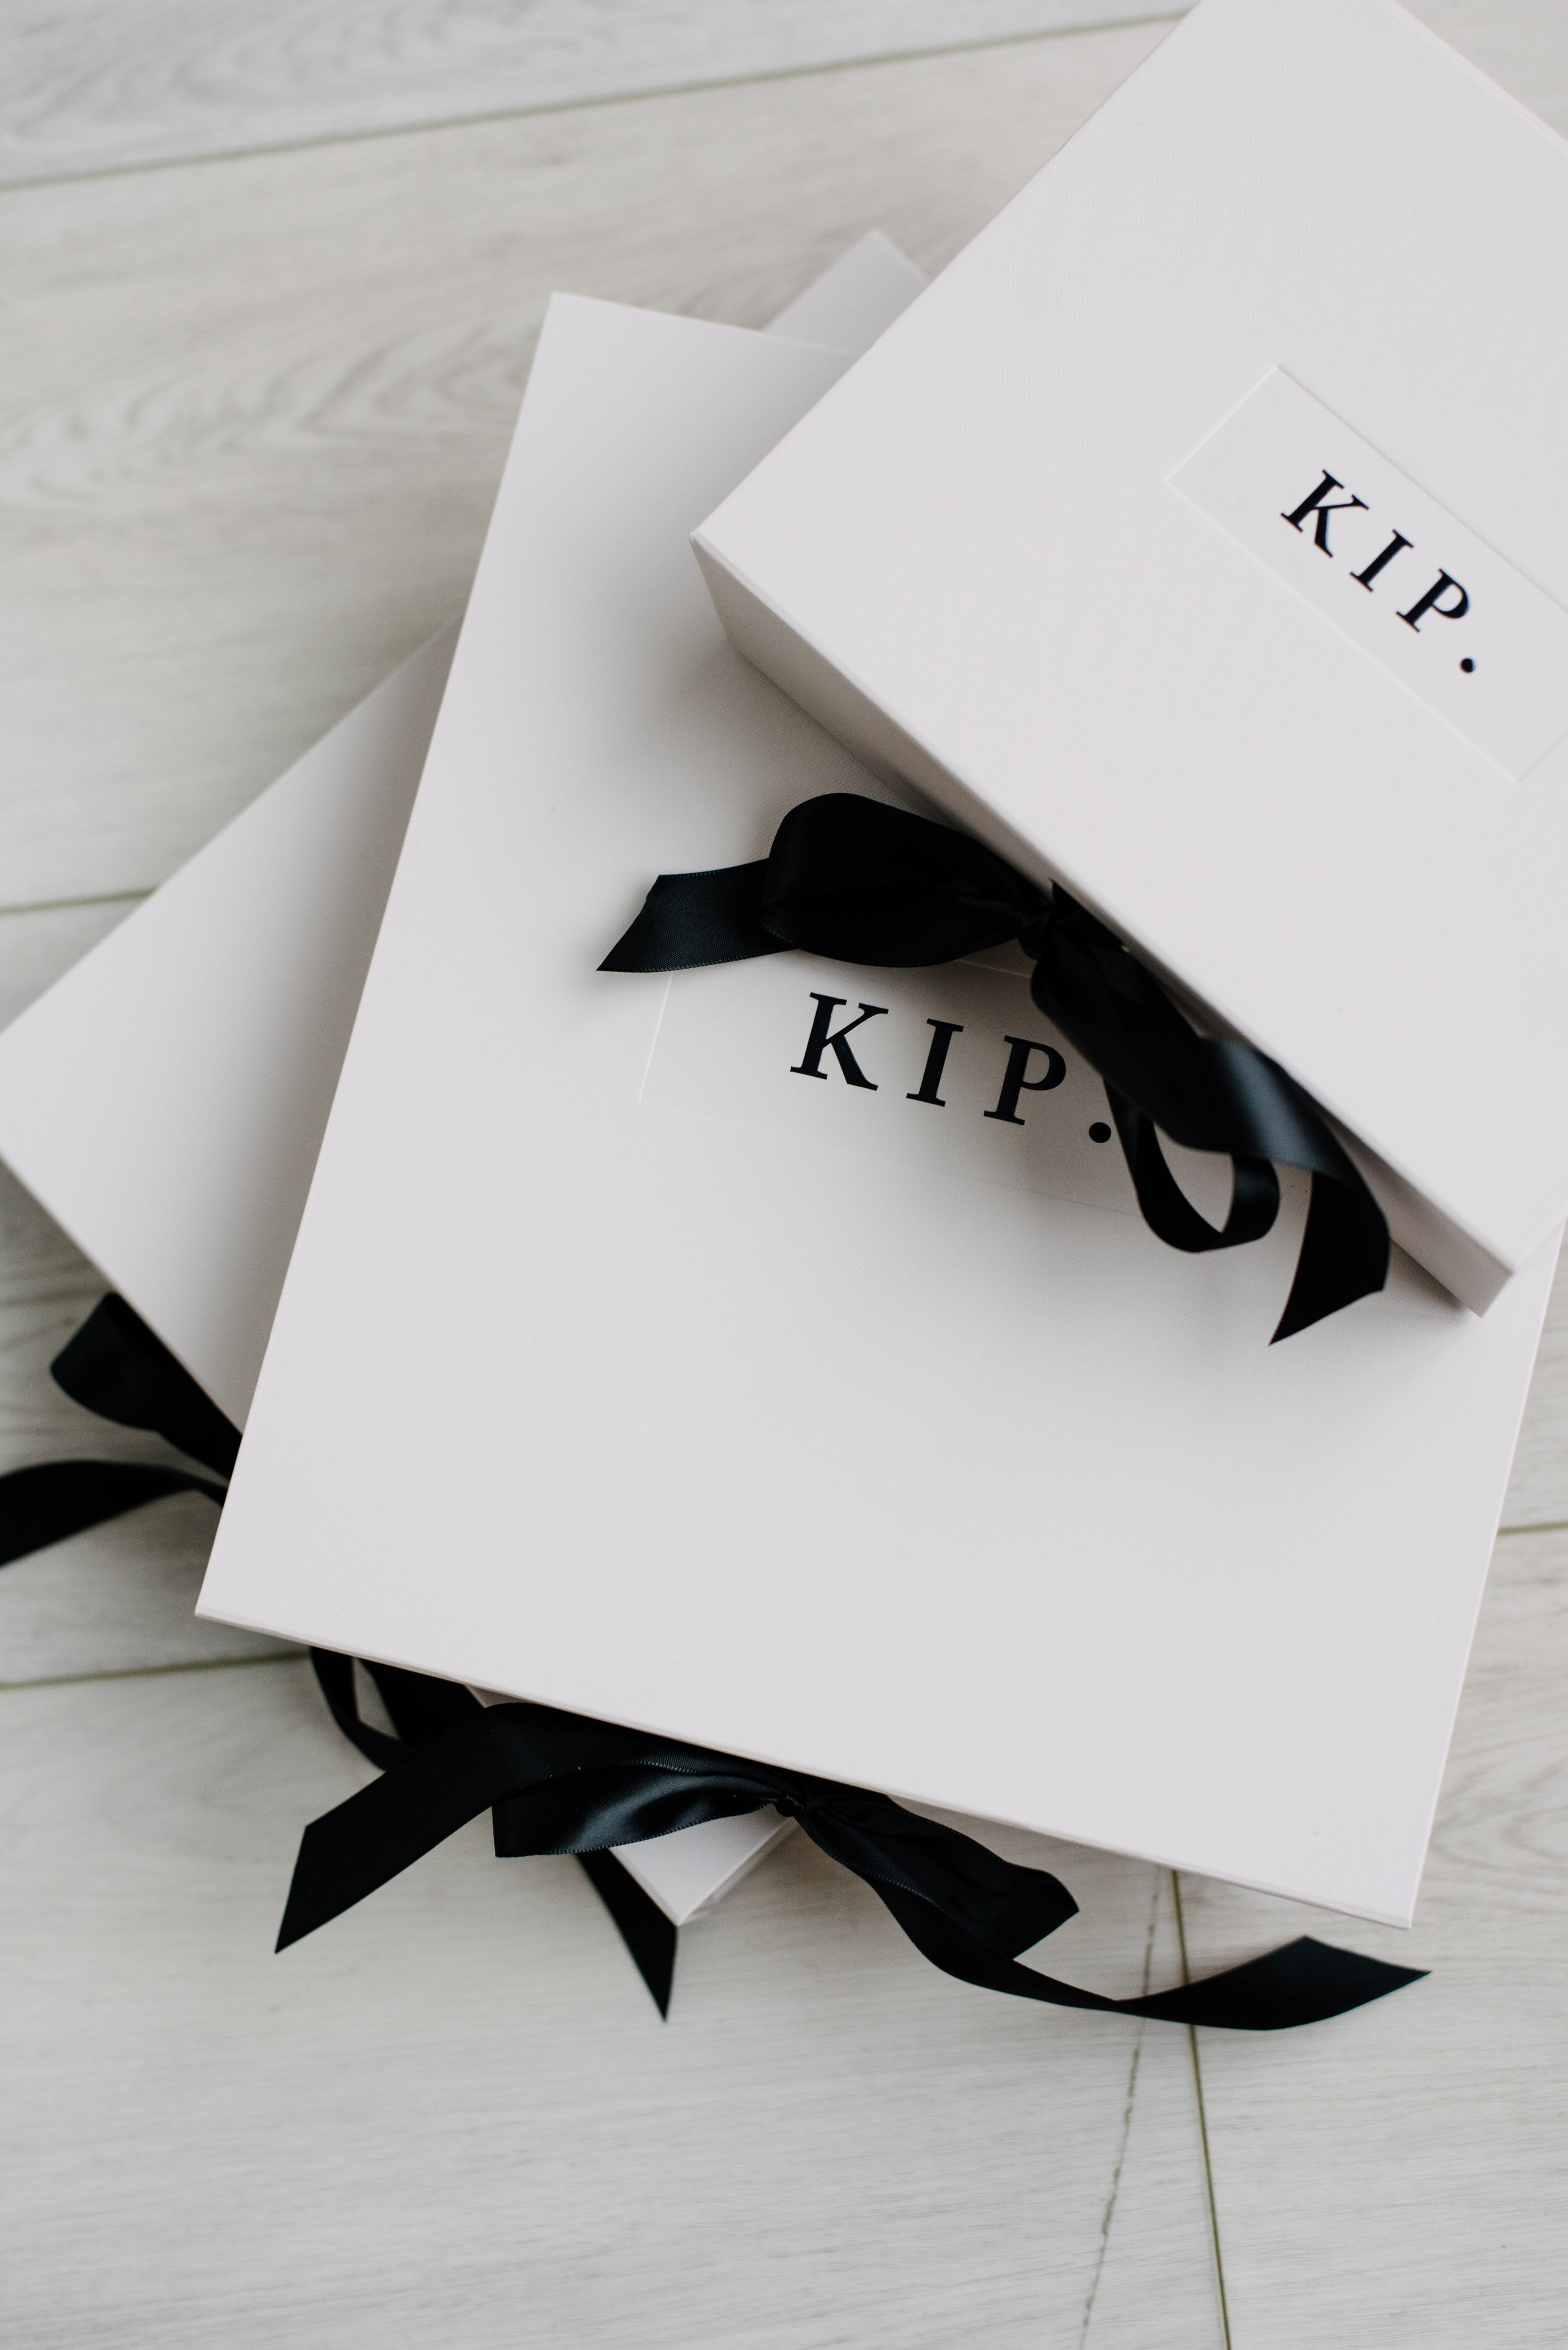 KIP Premium Cotton Pajama Set in Lavender